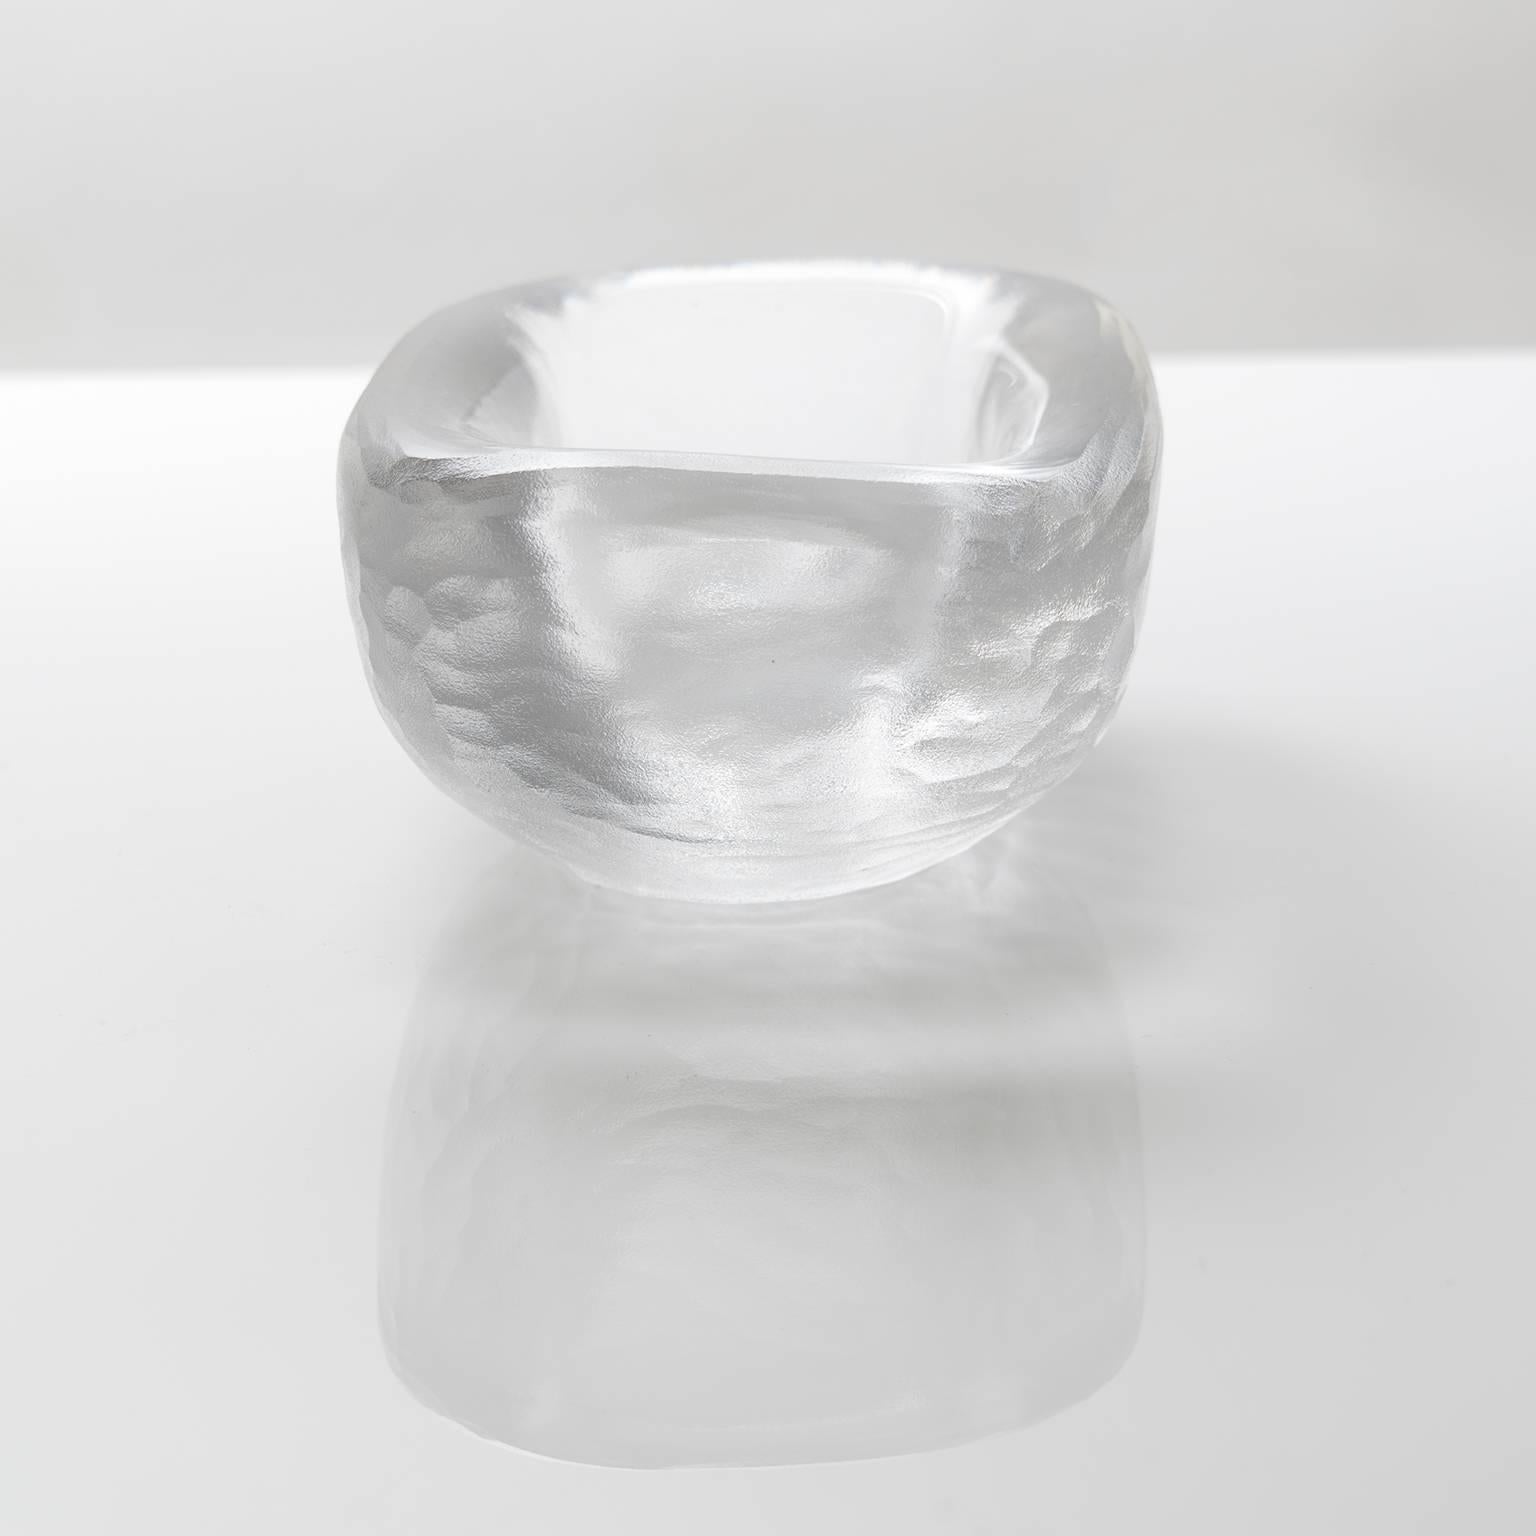 Art Glass Scandinavian Modern Acid Etched Bowl by Vicke Lindstrand for Orrefors